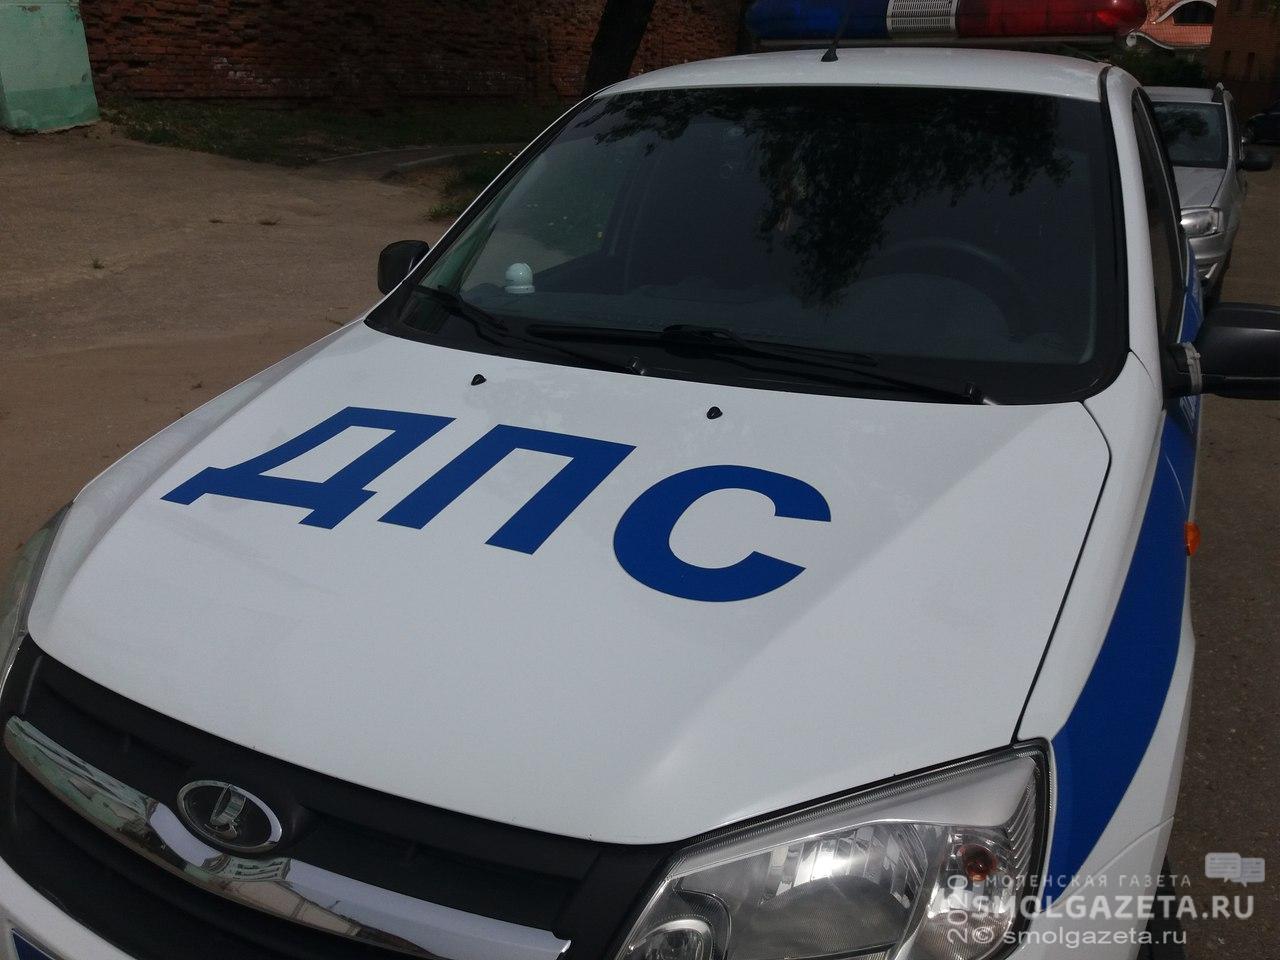 В центре Смоленска поймали водителя без прав